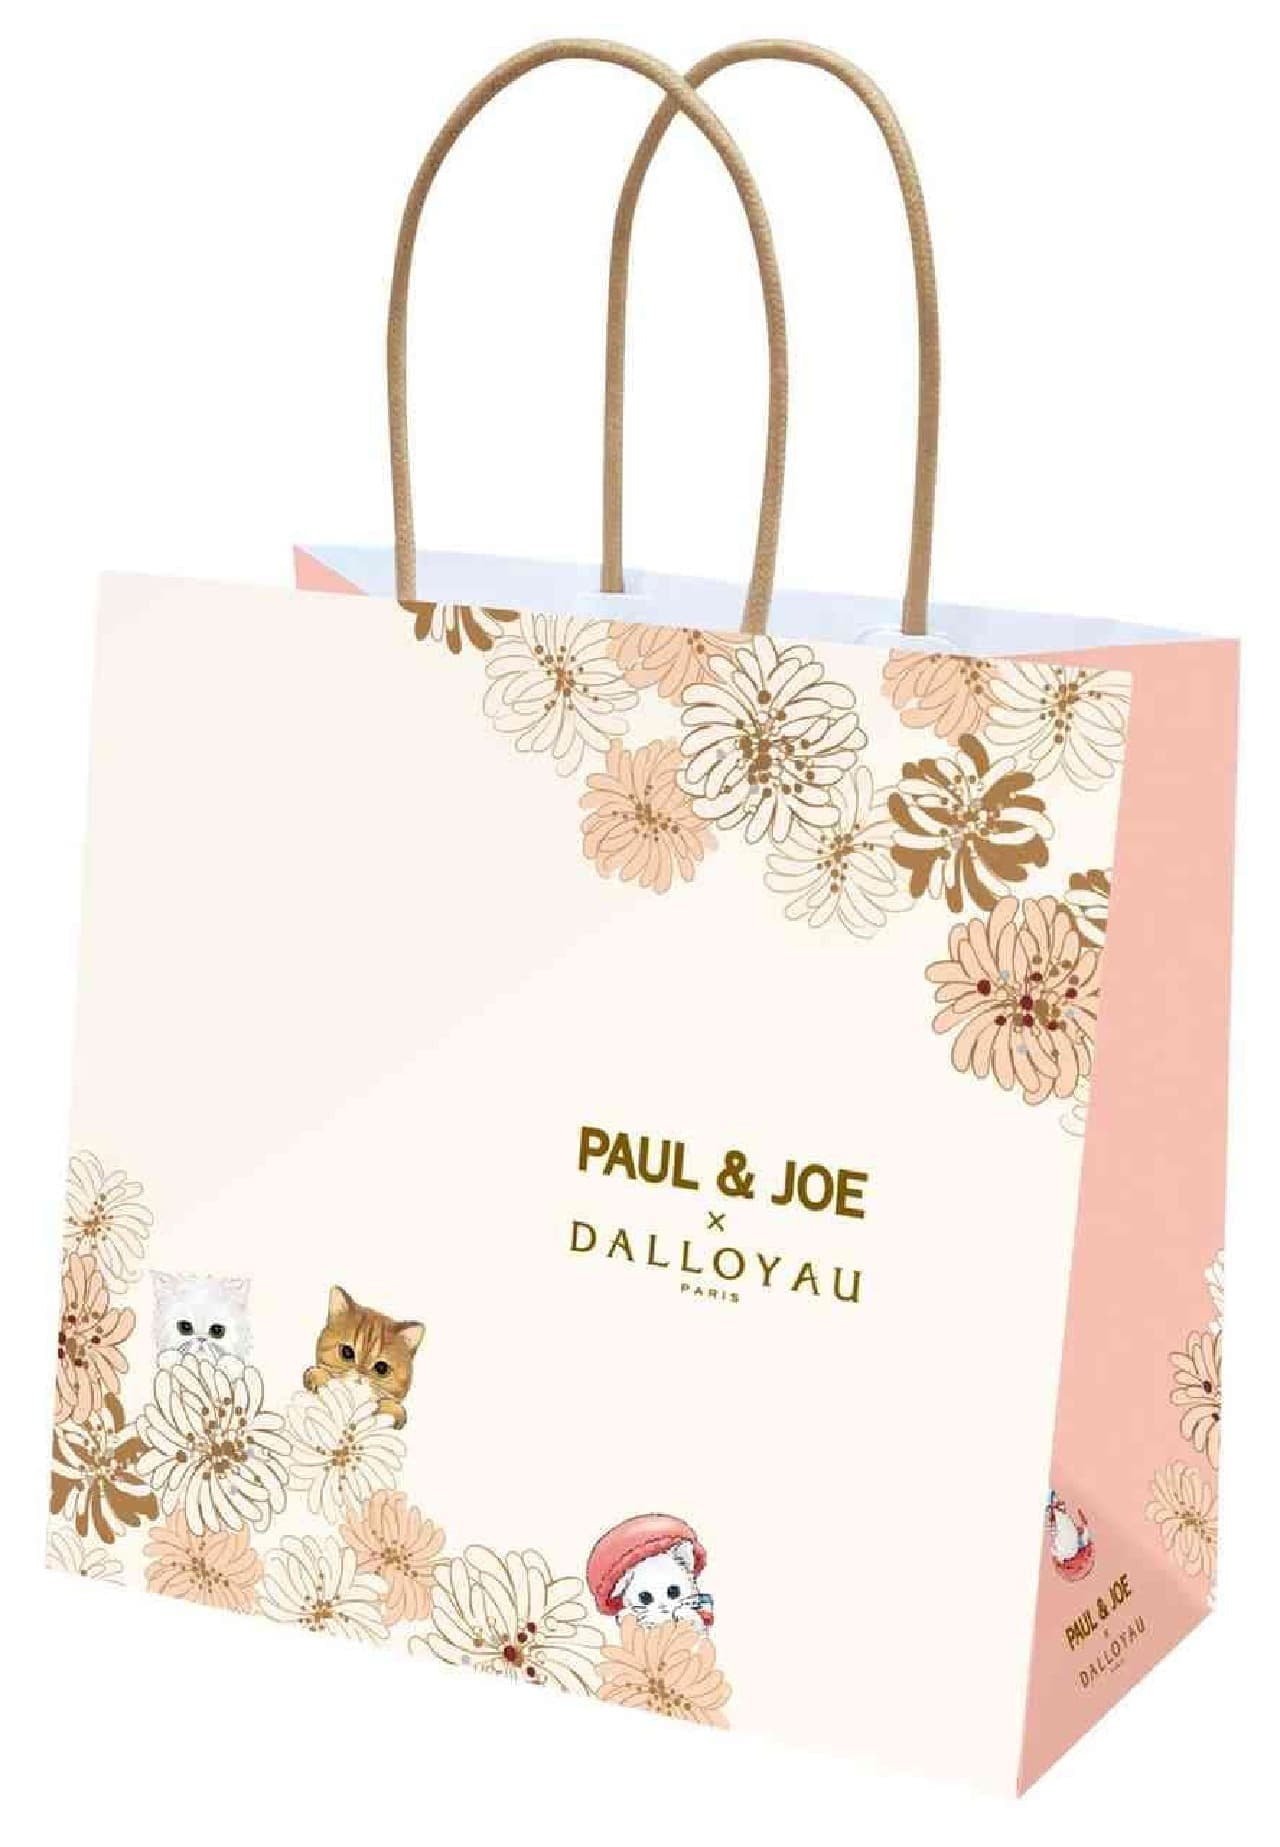 PAUL & JOE x Dalloyo cat design sweets